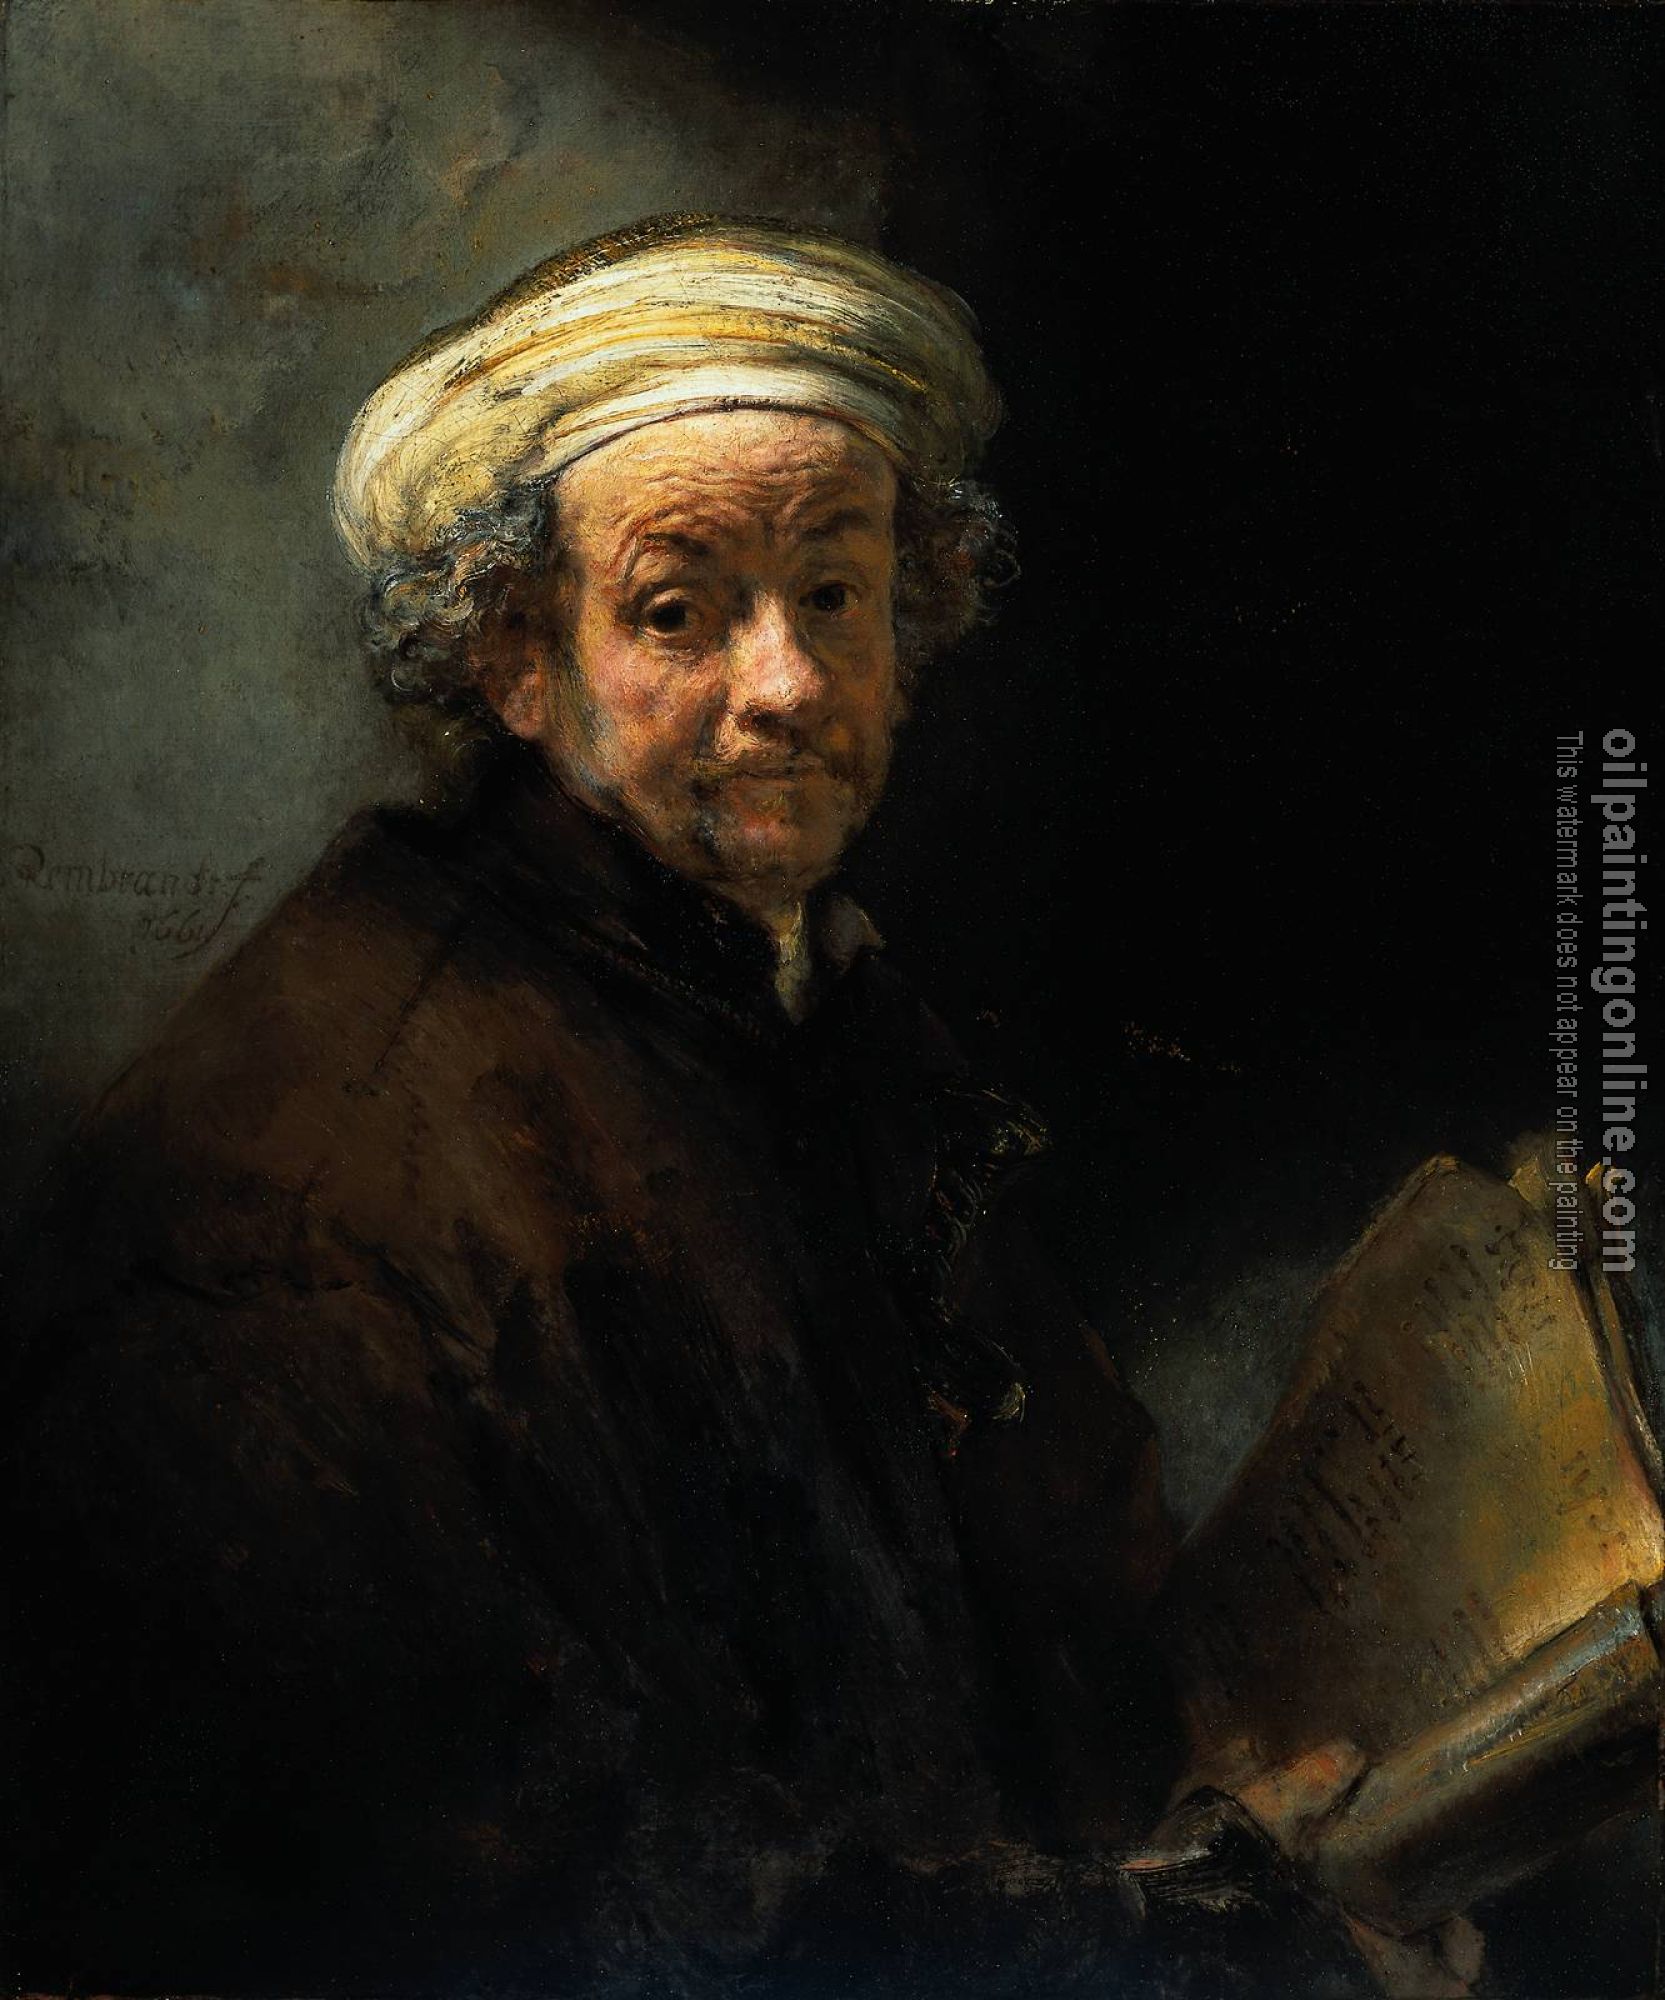 Rembrandt - Self Portrait as the Apostle St Paul